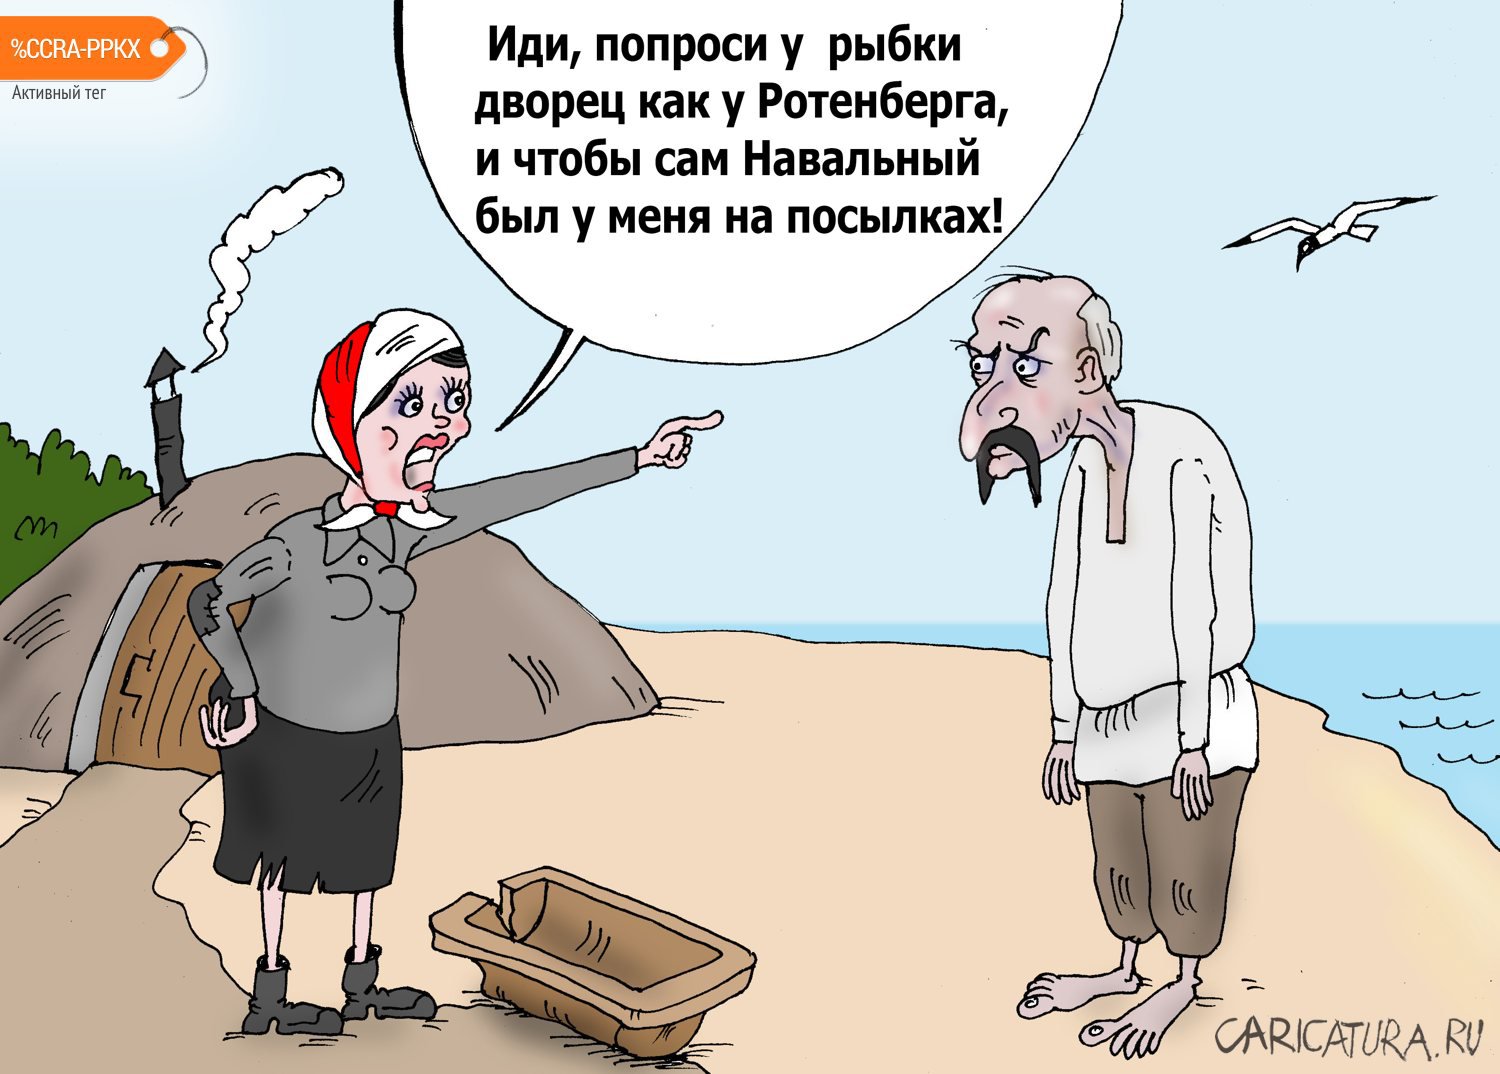 Карикатура "На берегу Белорусского моря", Валерий Тарасенко